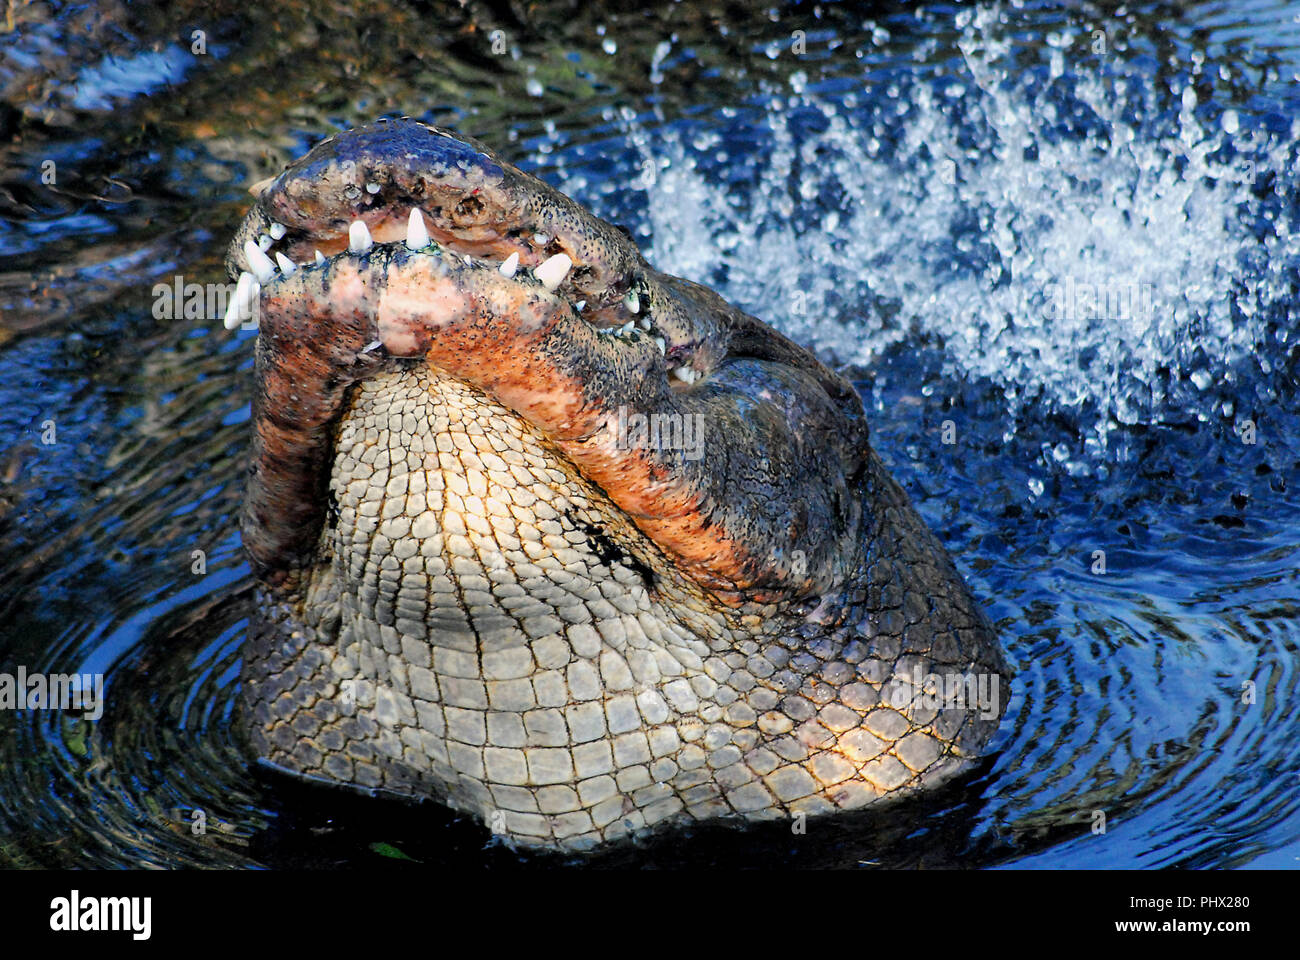 Dieses Alligator tatsächlich erhoben sich aus dem Wasser in die Everglades und brüllte, während Prügel sein Schwanz. Dieses ist, um einen Partner zu gewinnen. Stockfoto